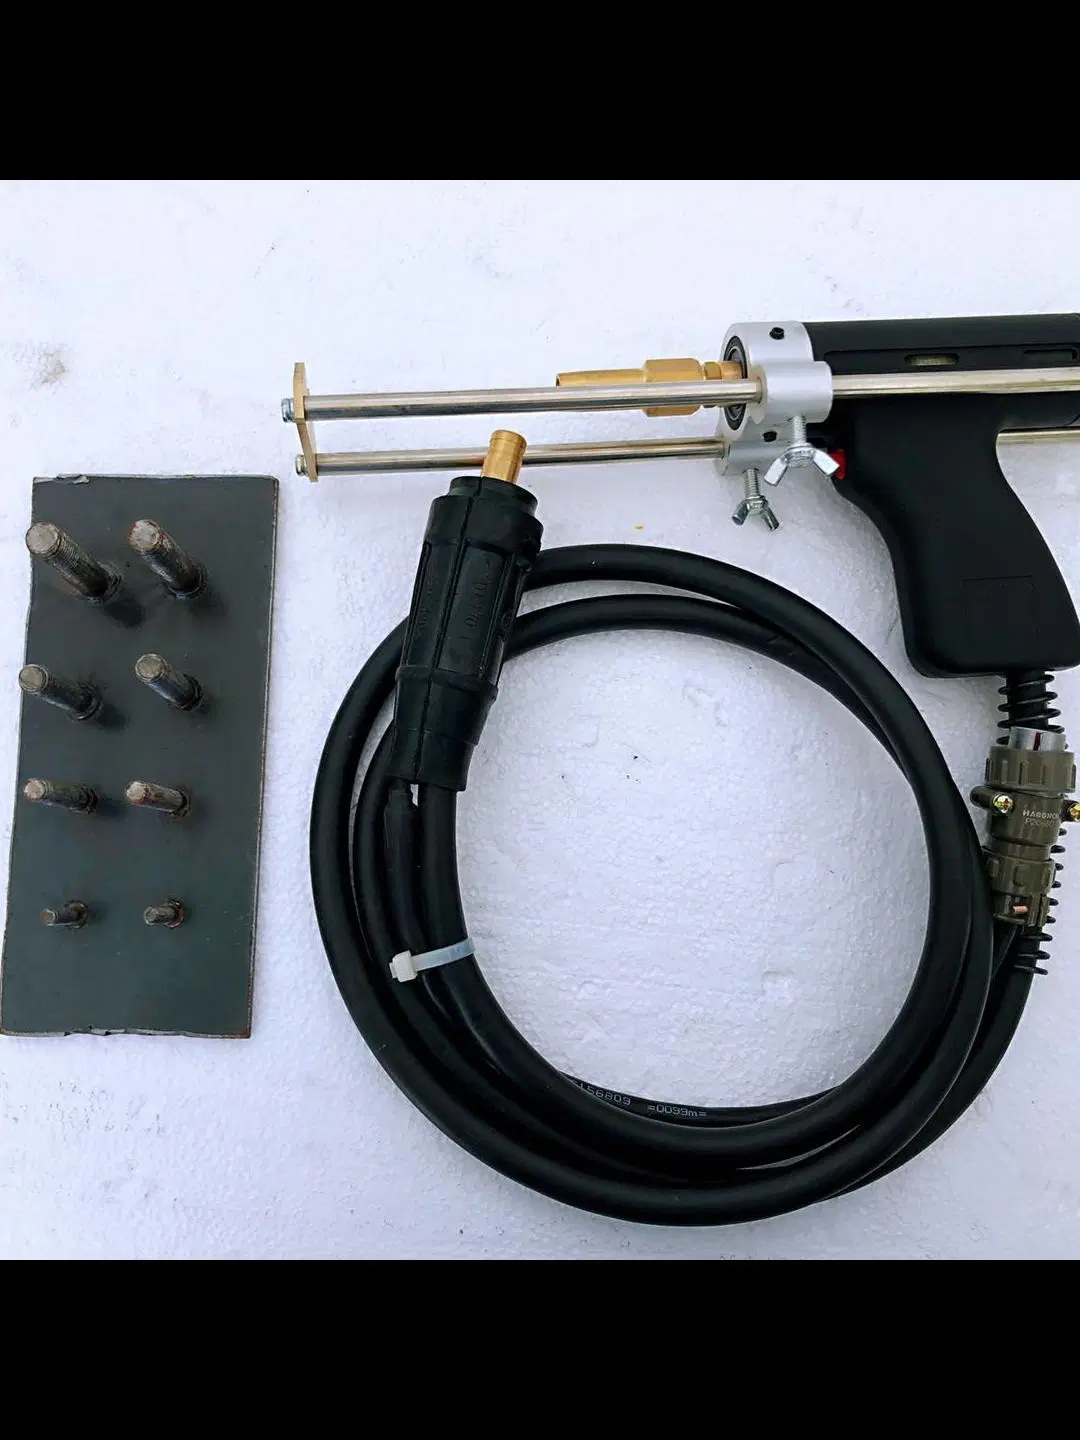 Ar profissional portátil de refrigeração Pistola de solda para soldagem do prisioneiro